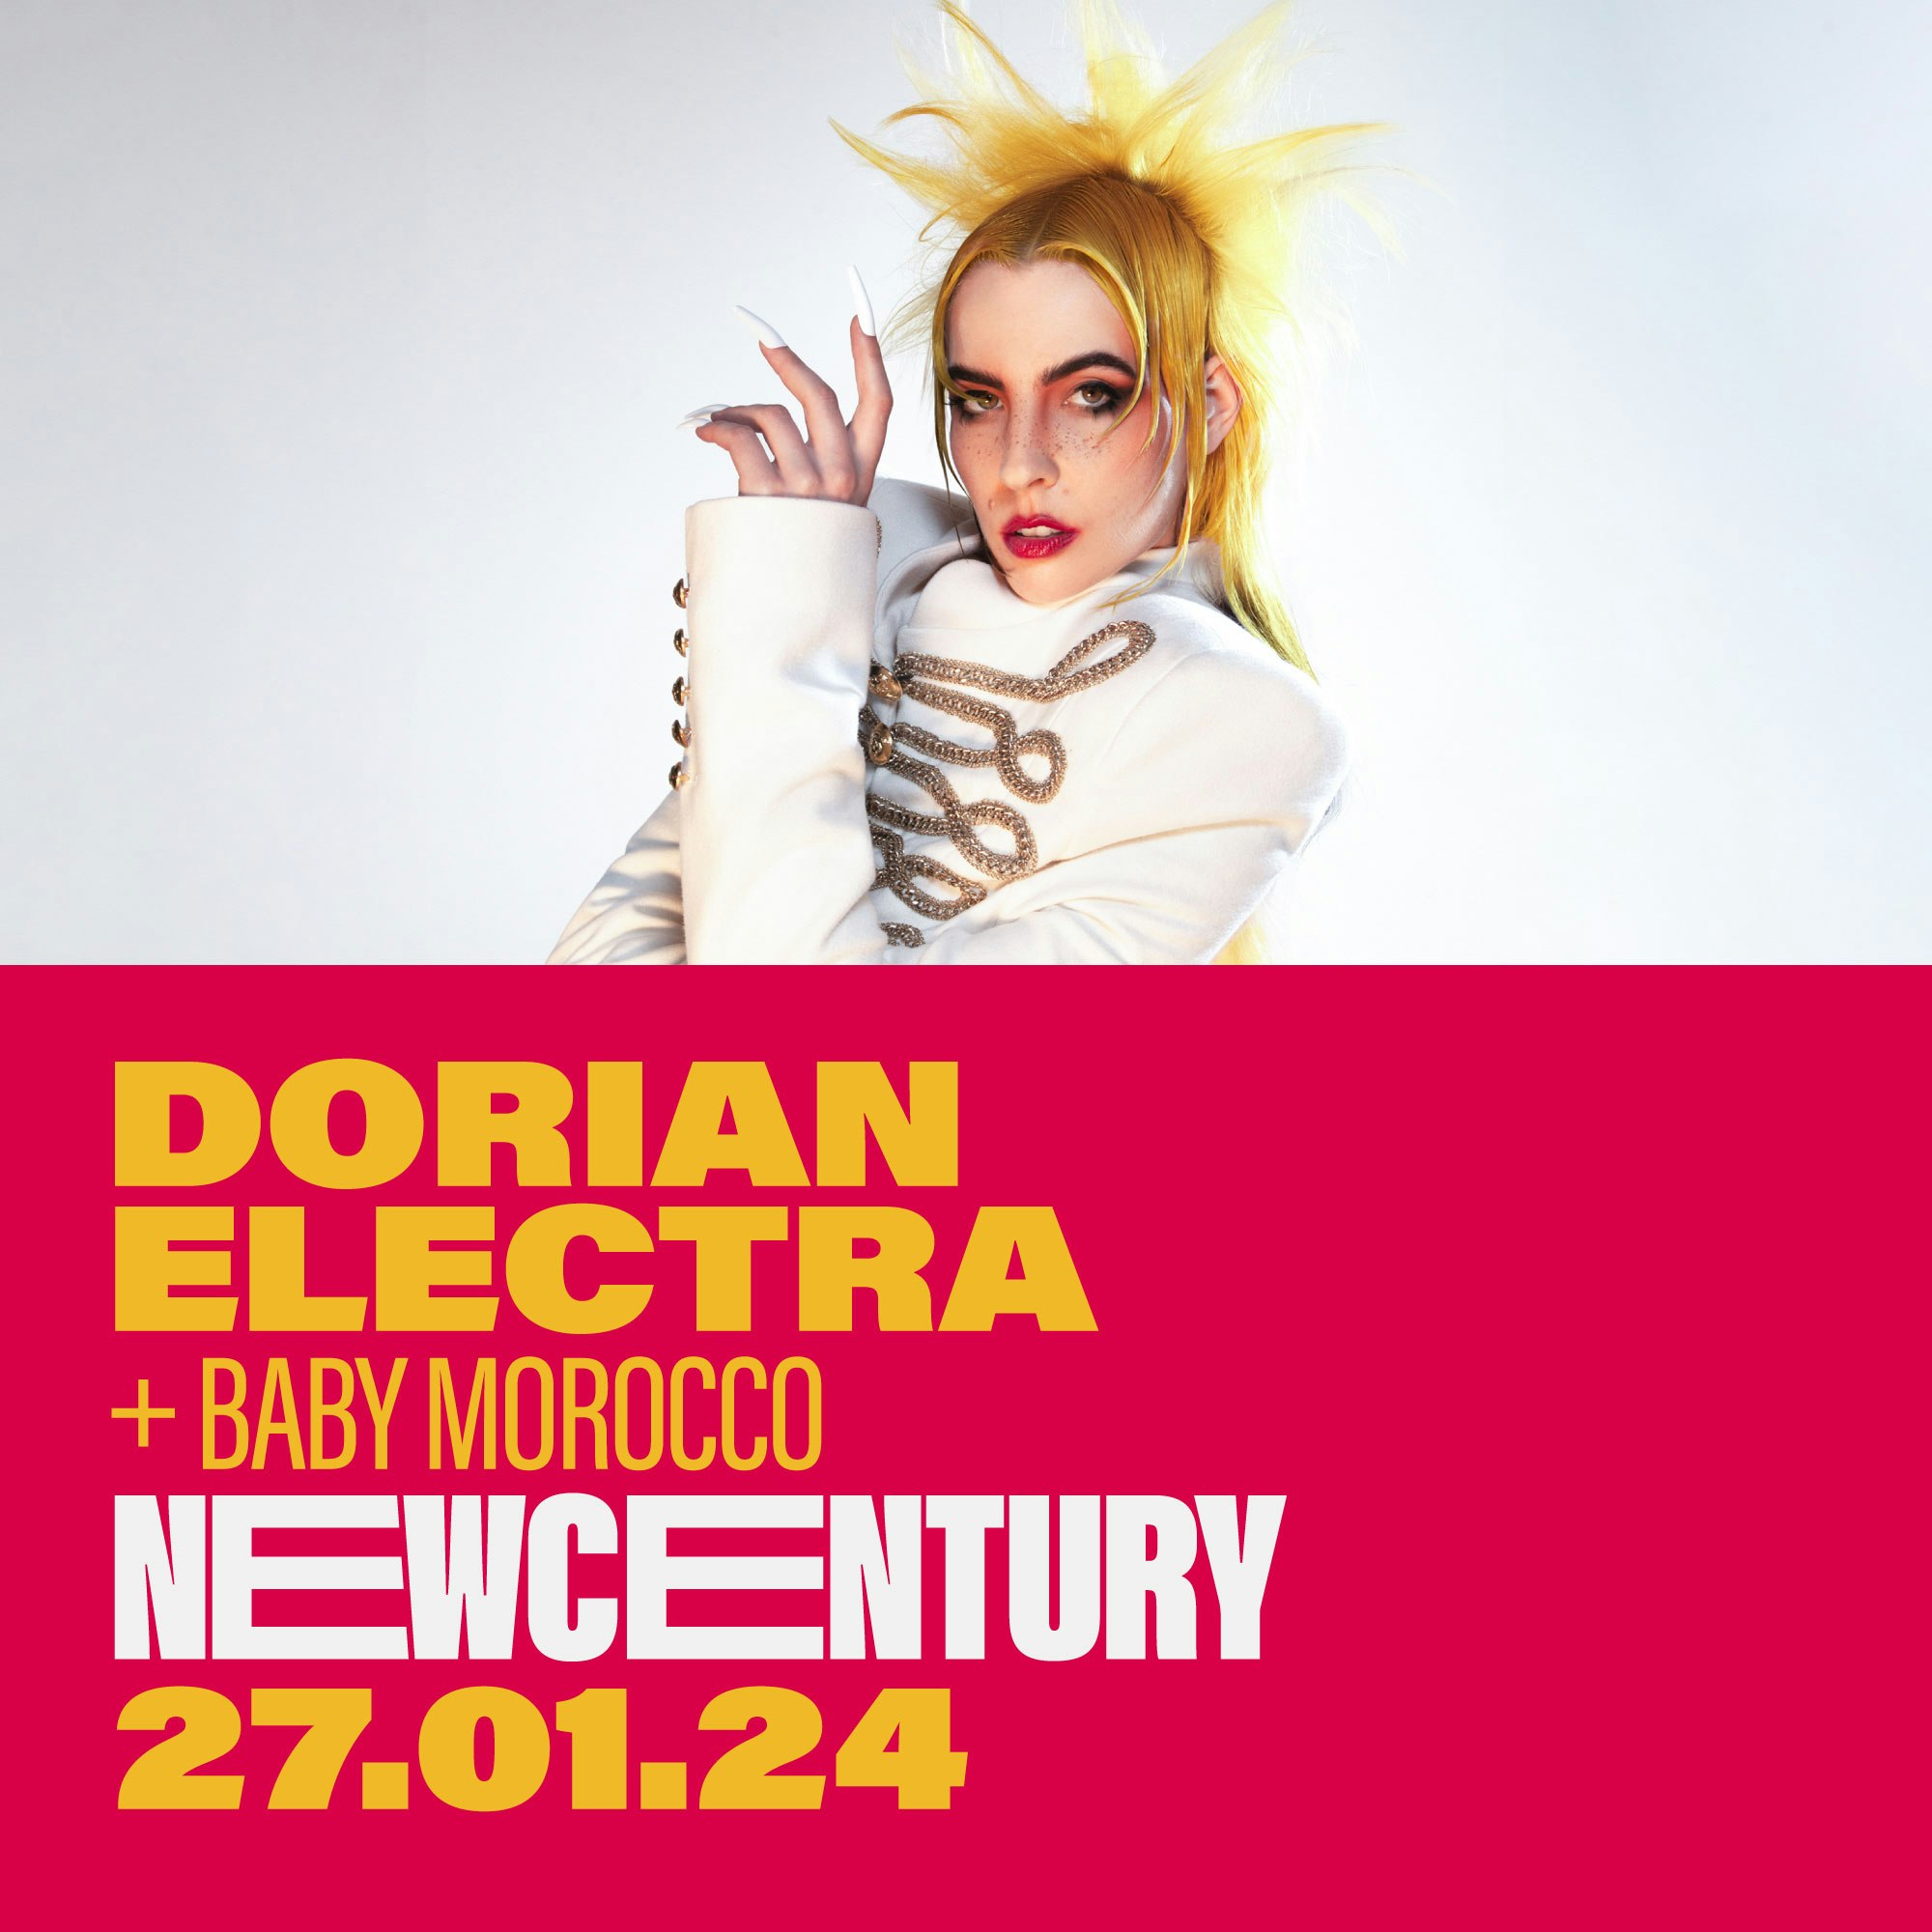 Dorian Electra 29th October 2020